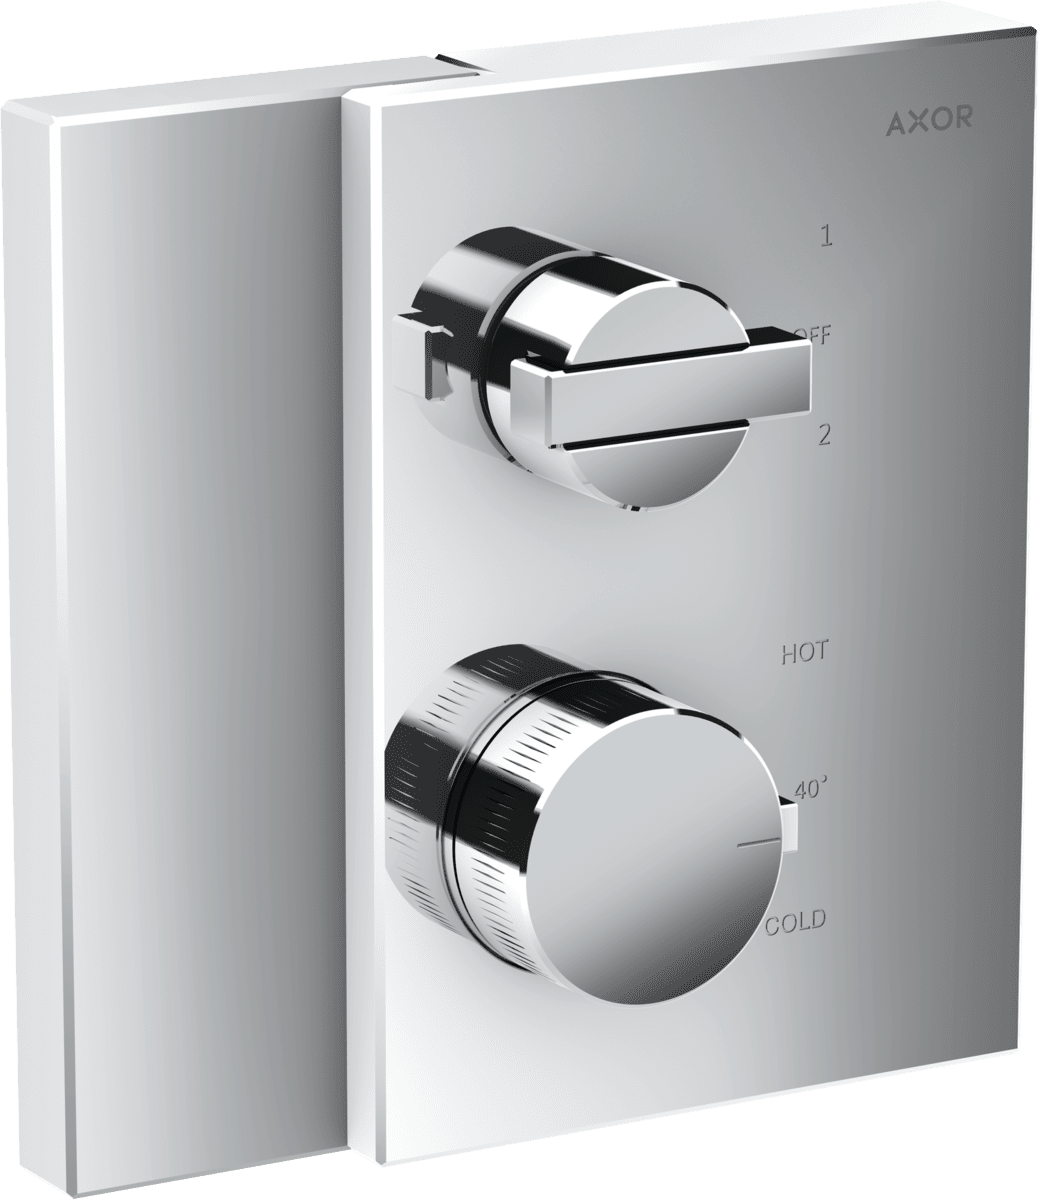 HANSGROHE AXOR Edge Termostat ankastre montaj için açma kapama/yönlendirme valfi ile #46760000 - Krom resmi